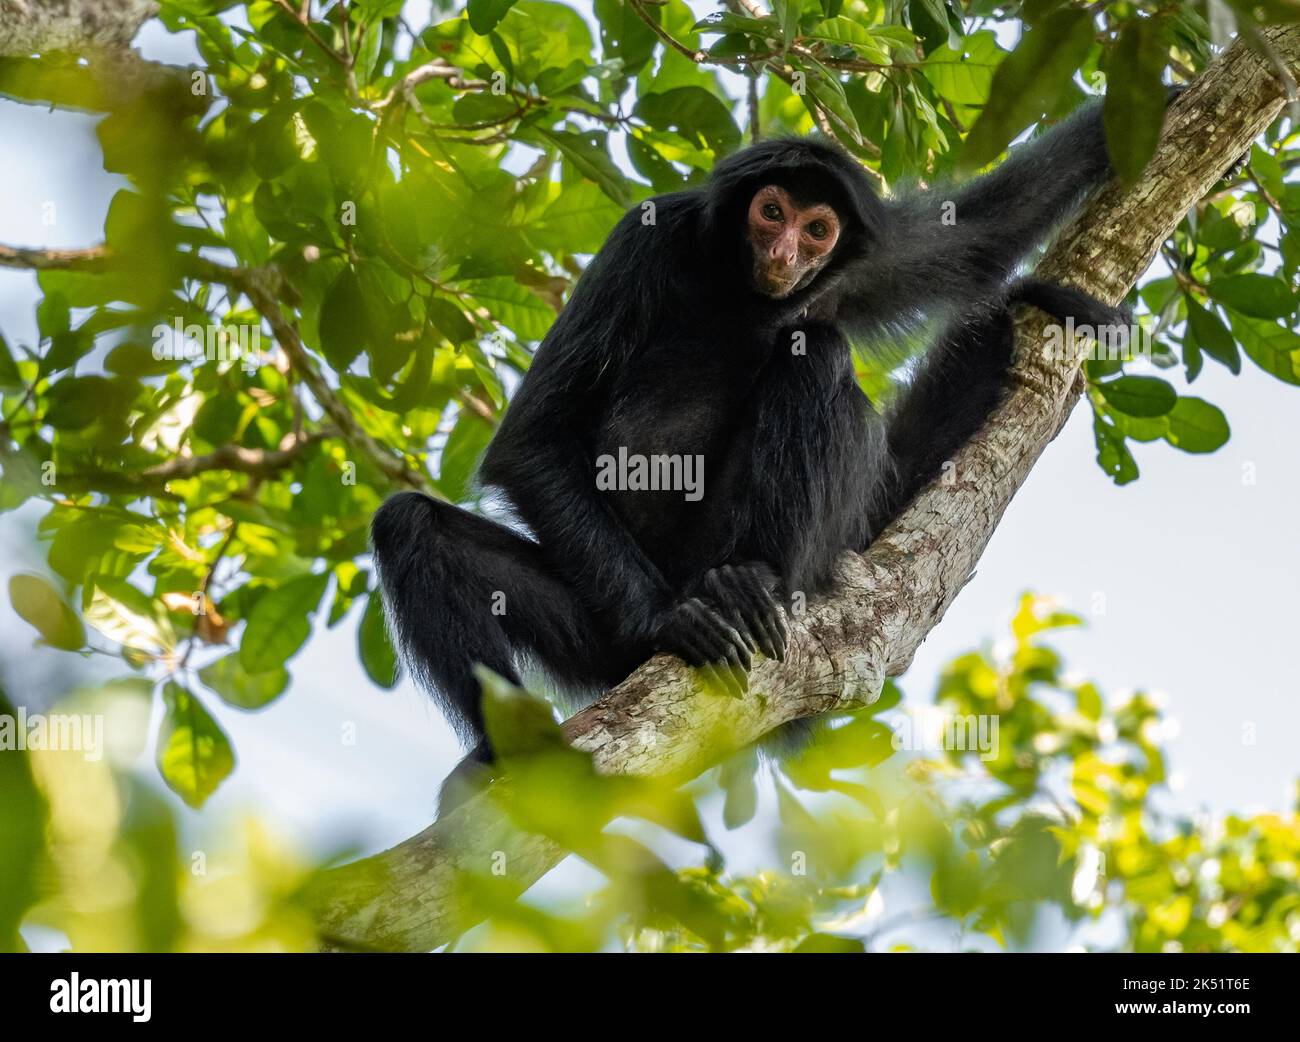 Mono araña de Guayana salvaje, o mono araña negra de cara roja (Ateles paniscus) sentado en un árbol en un bosque tropical. Amazonas, Brasil. Foto de stock